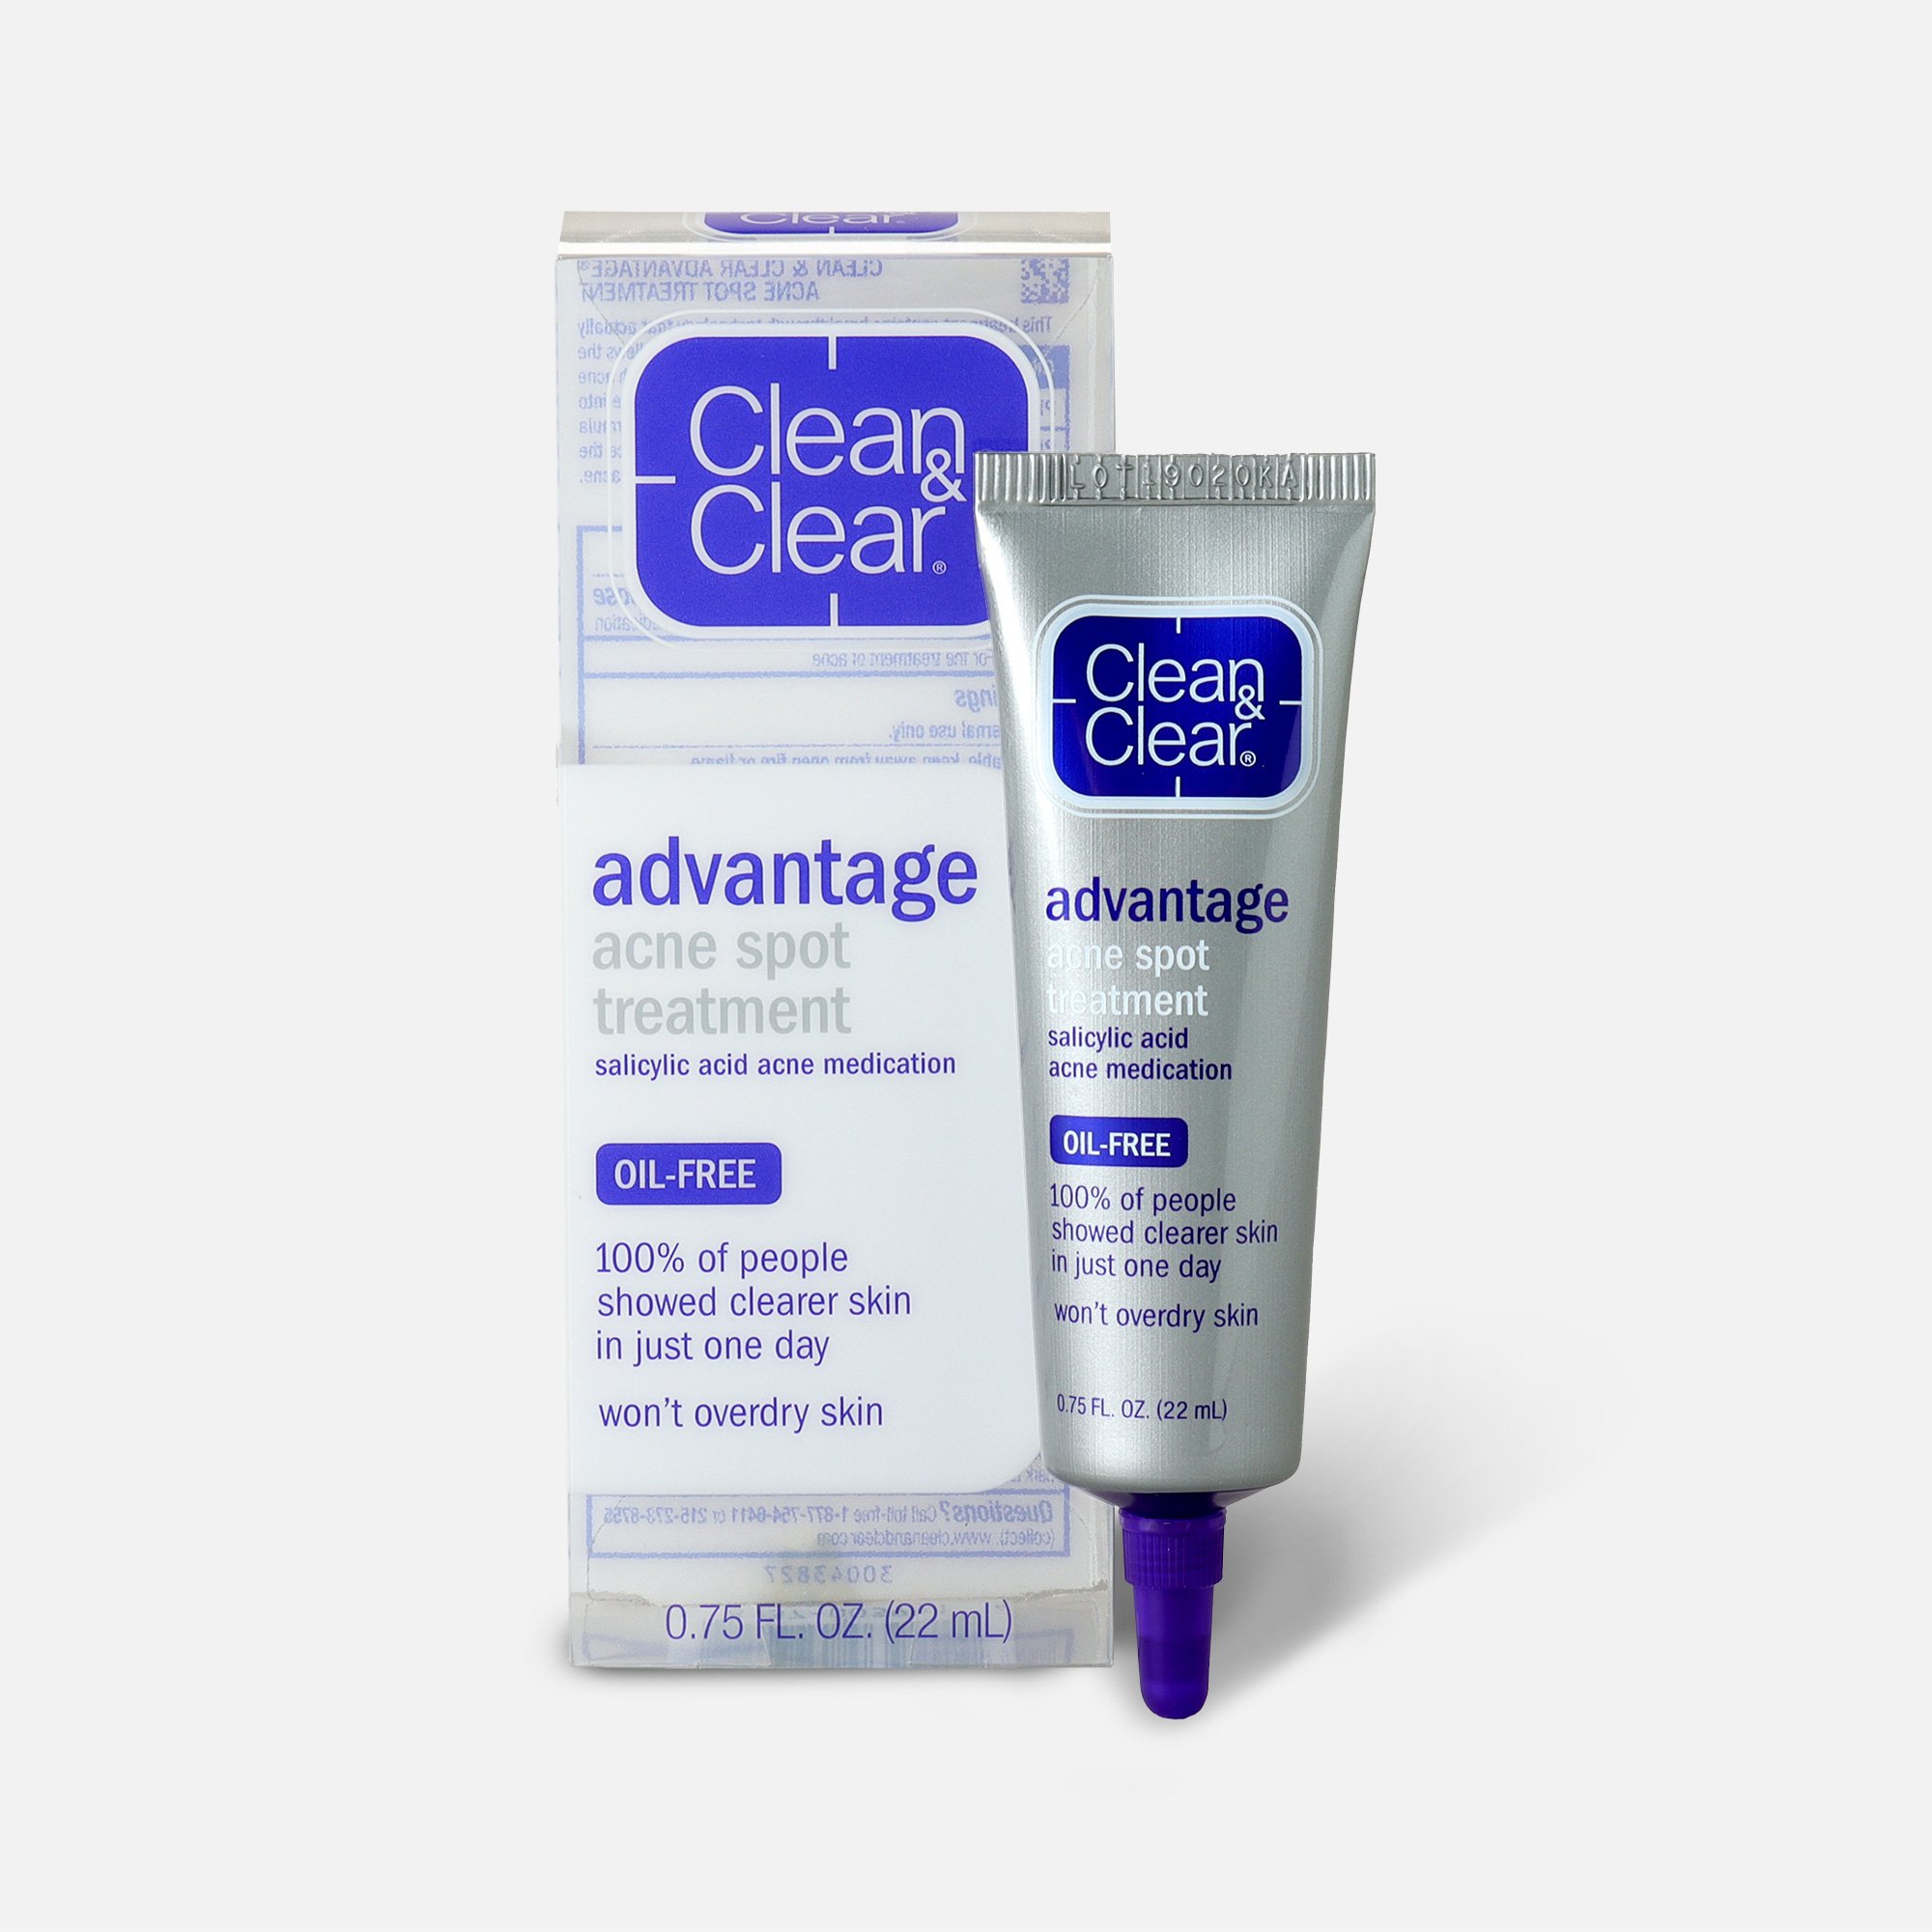 Clean & Clear Advantage Acne Spot Treatment - Reviews